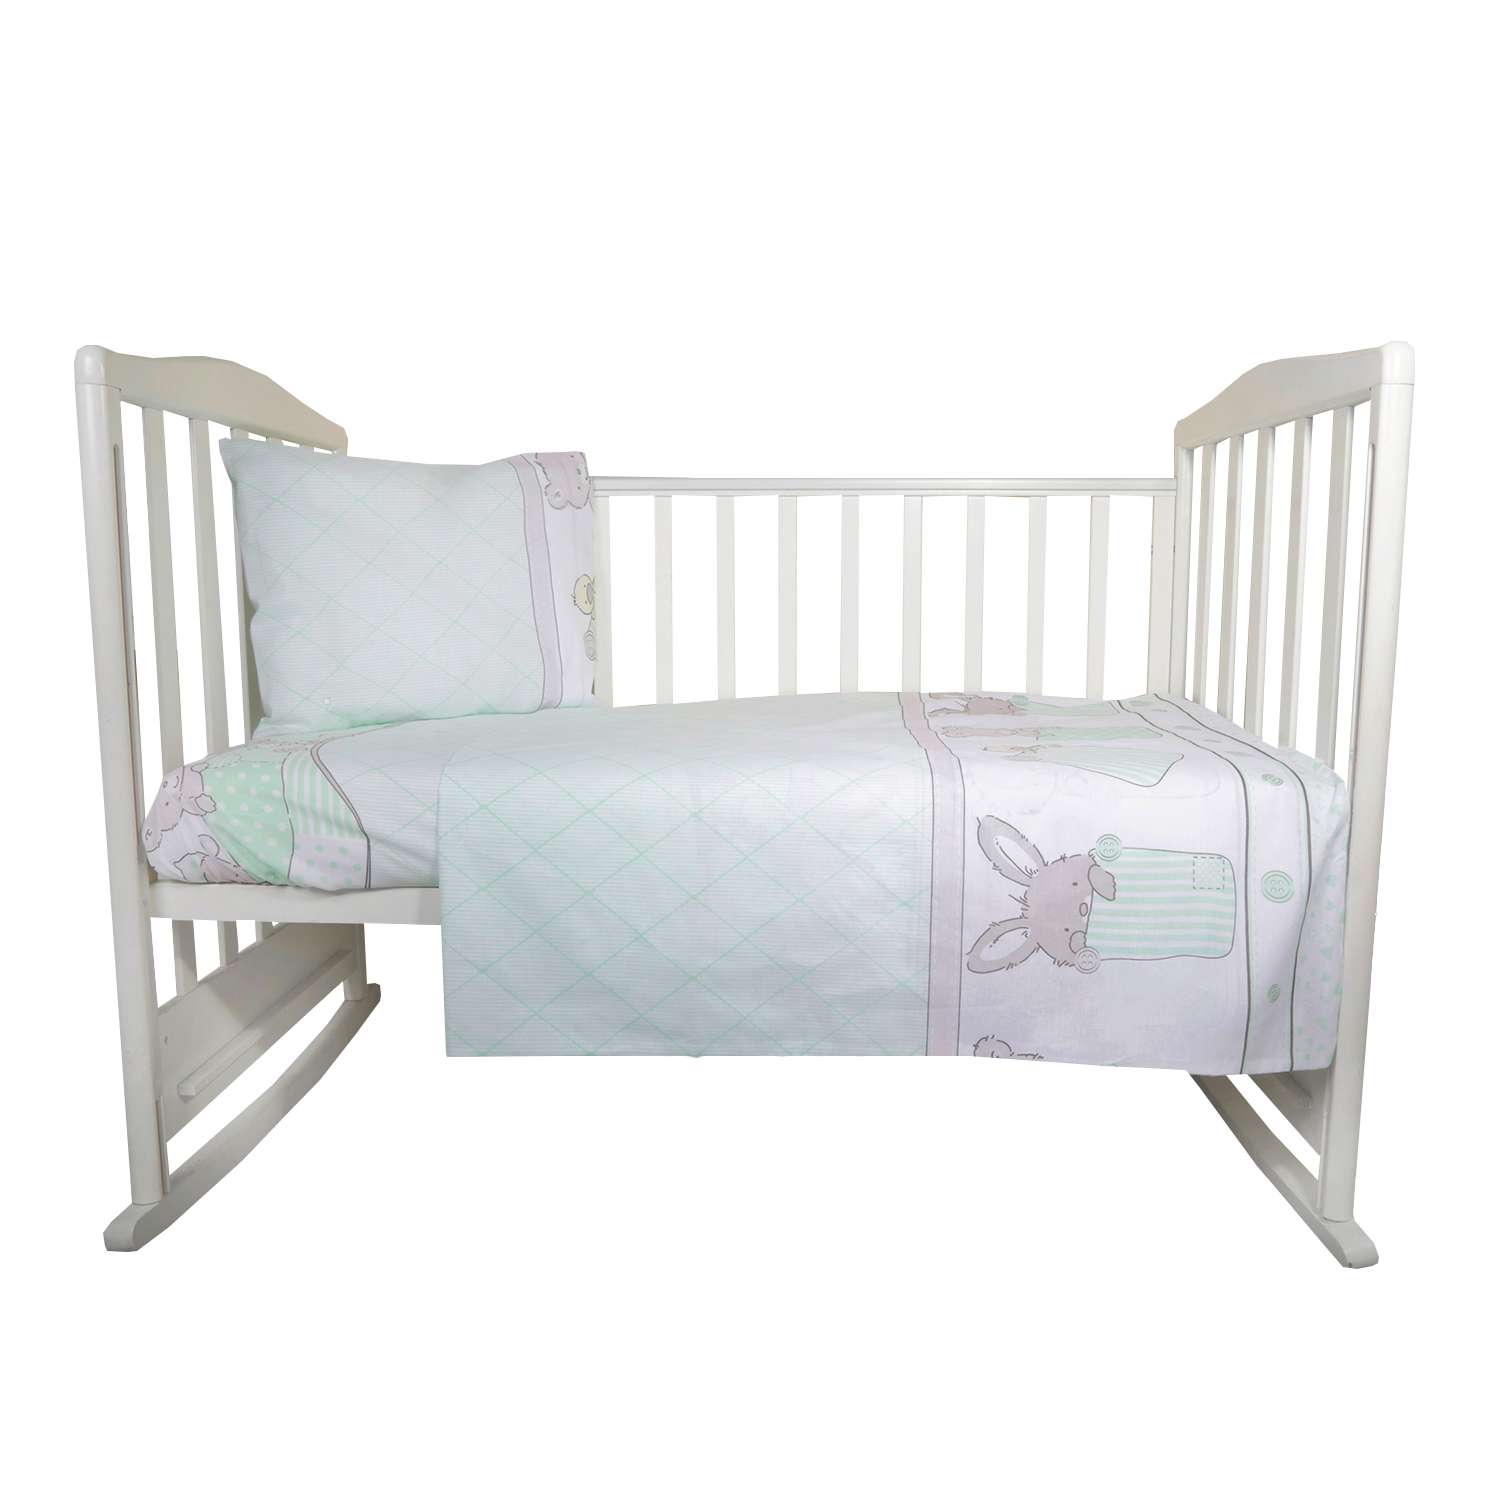 Комплект постельного белья Эдельвейс Кармашки Зеленый 3предмета 10055 - фото 1